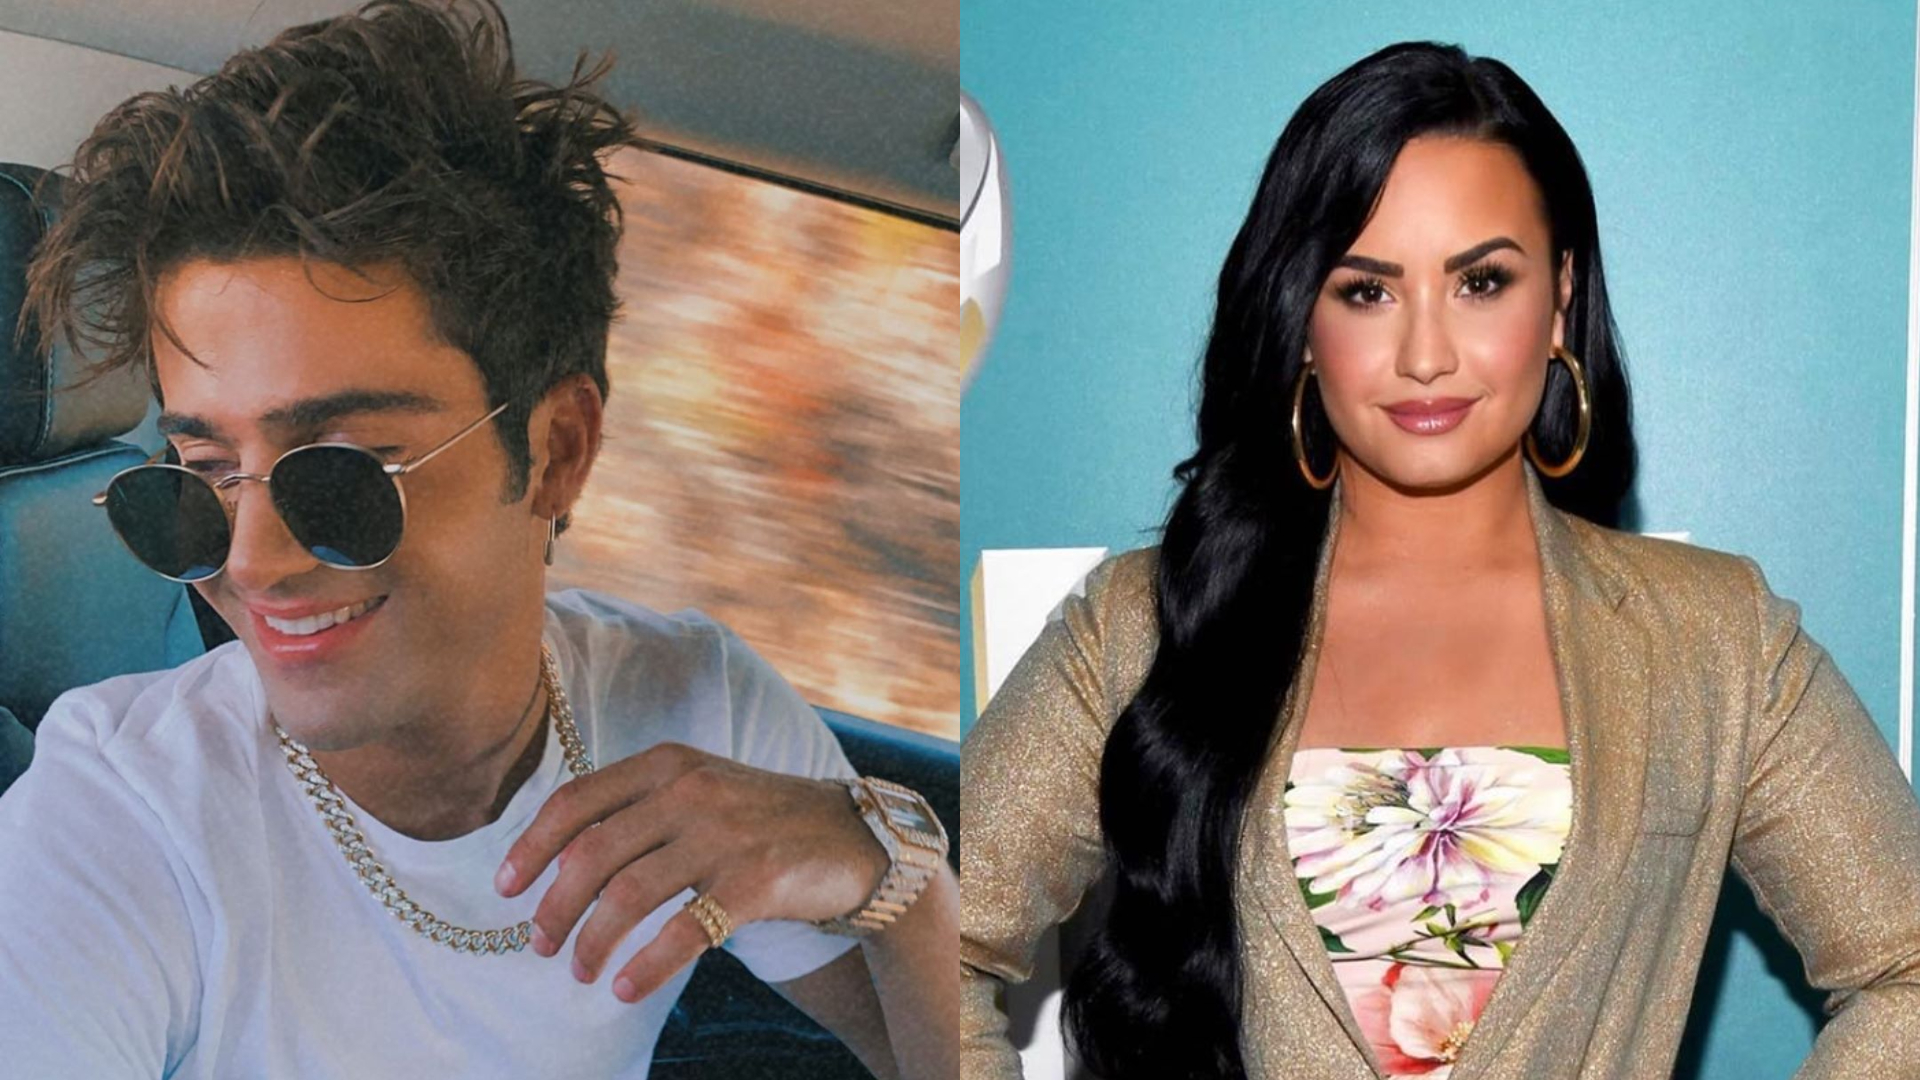 El actor afirma que es acosado por seguidores de Demi Lovato y sostiene su versión sobre su ruptura (Foto: Instagram @maxehrich / @ddlovato)